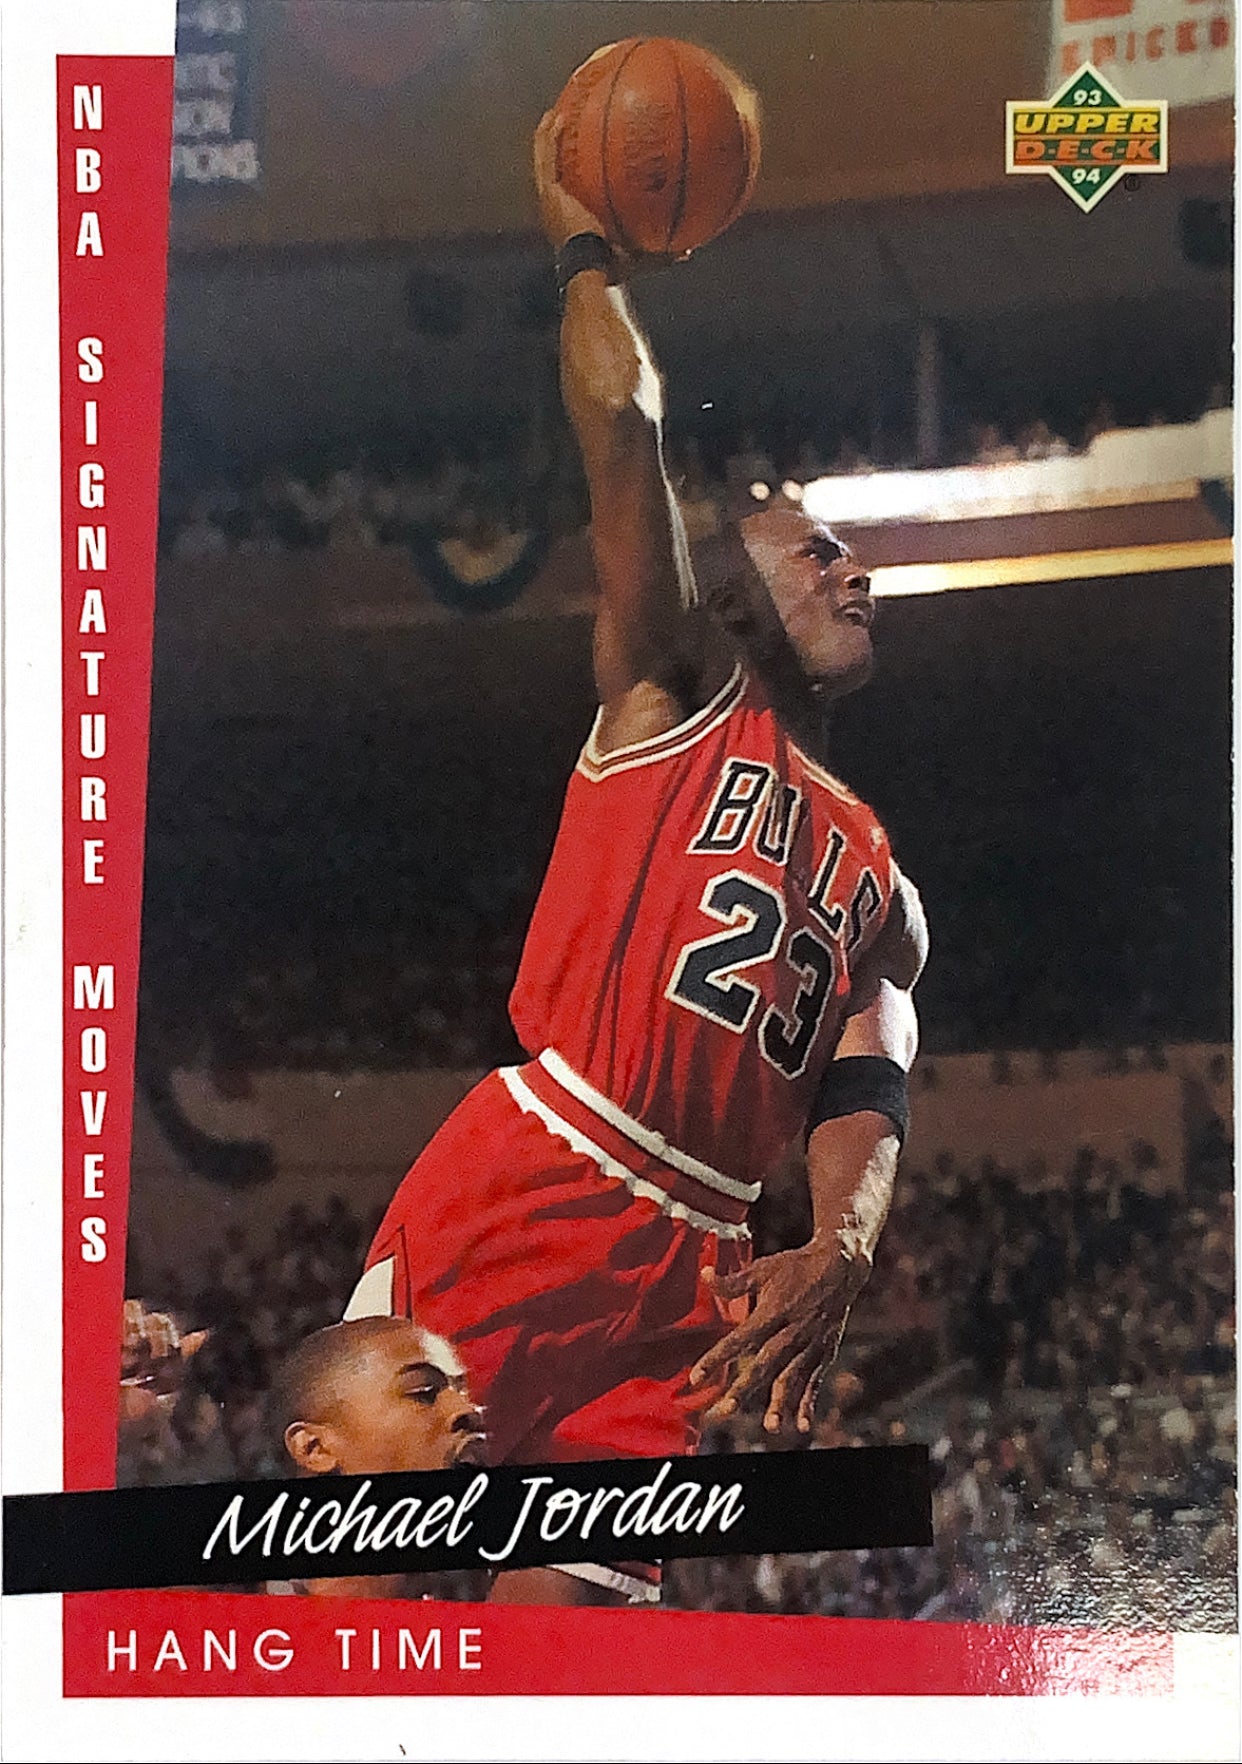 1993-94 Upper Deck Hang Time Michael Jordan